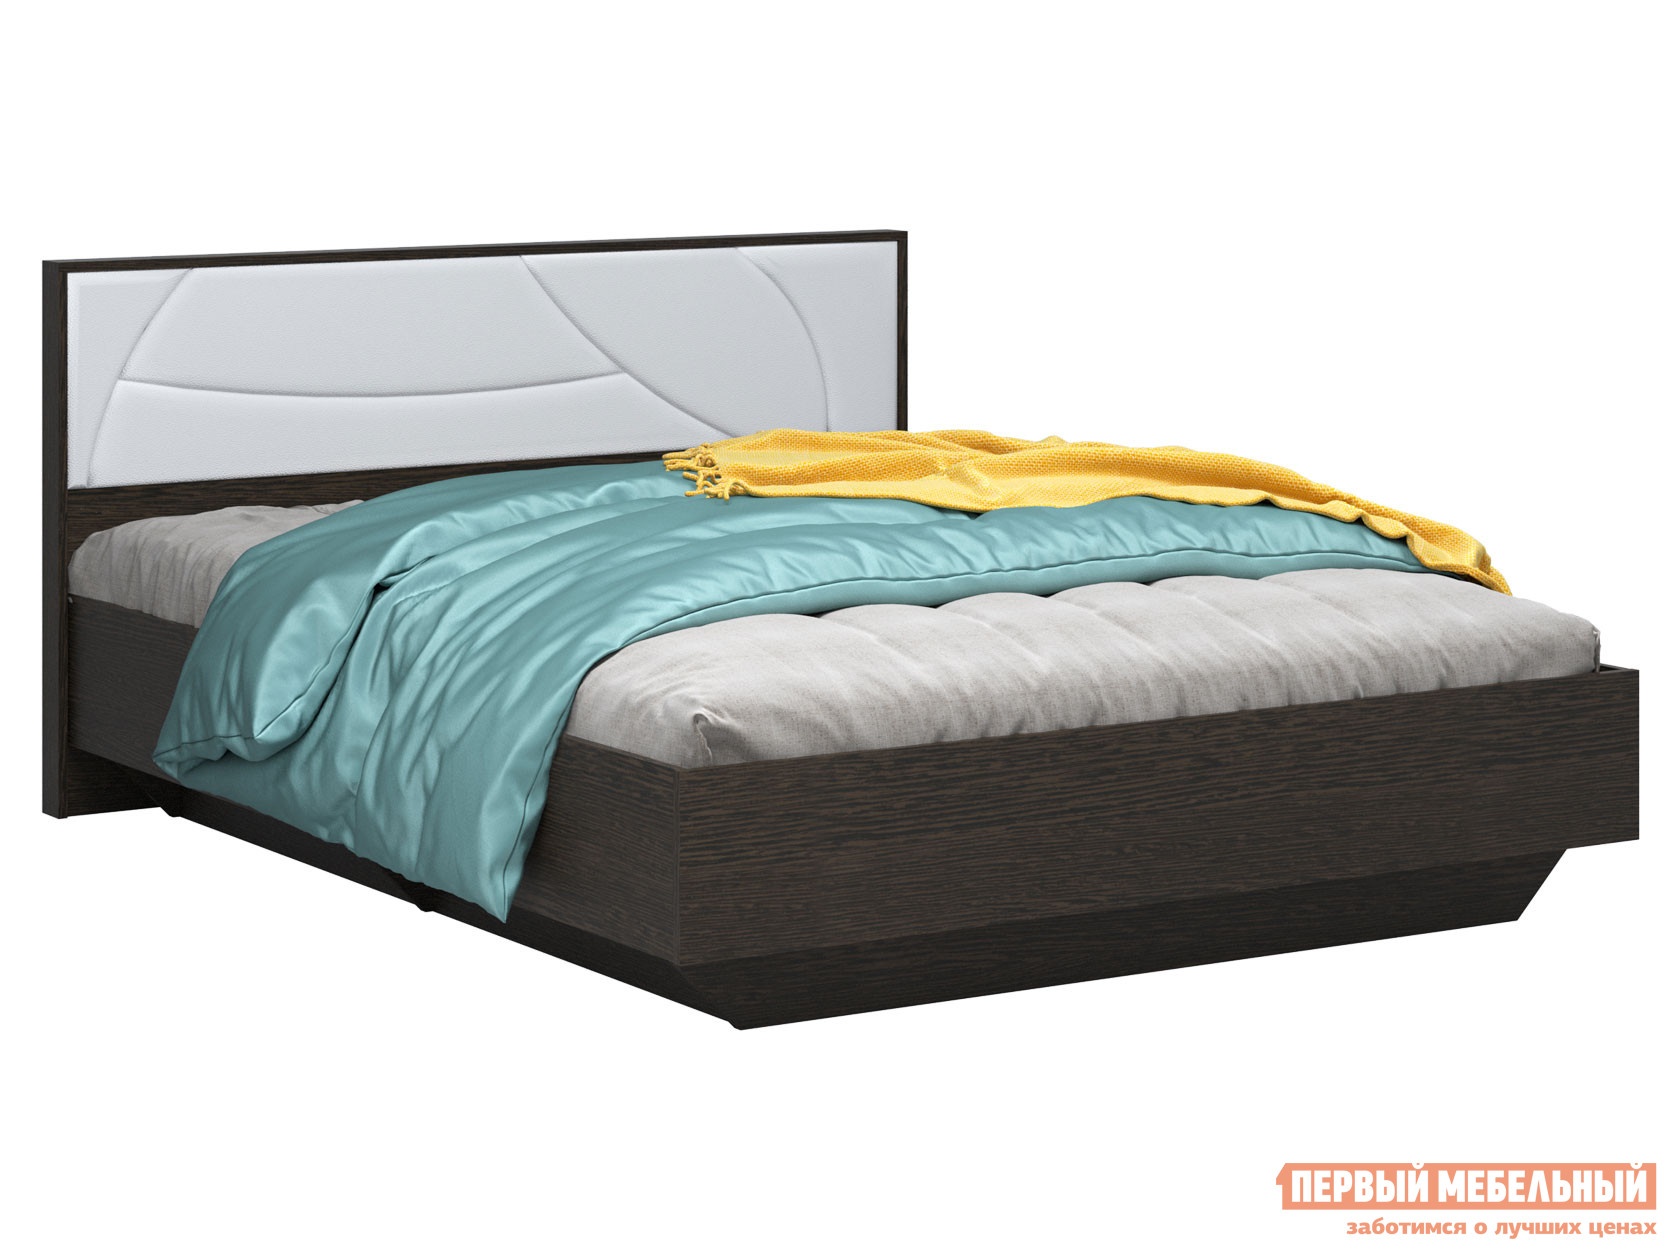 Односпальная кровать мирти люкс венге белый, экокожа, с анатомическим основанием preview 1